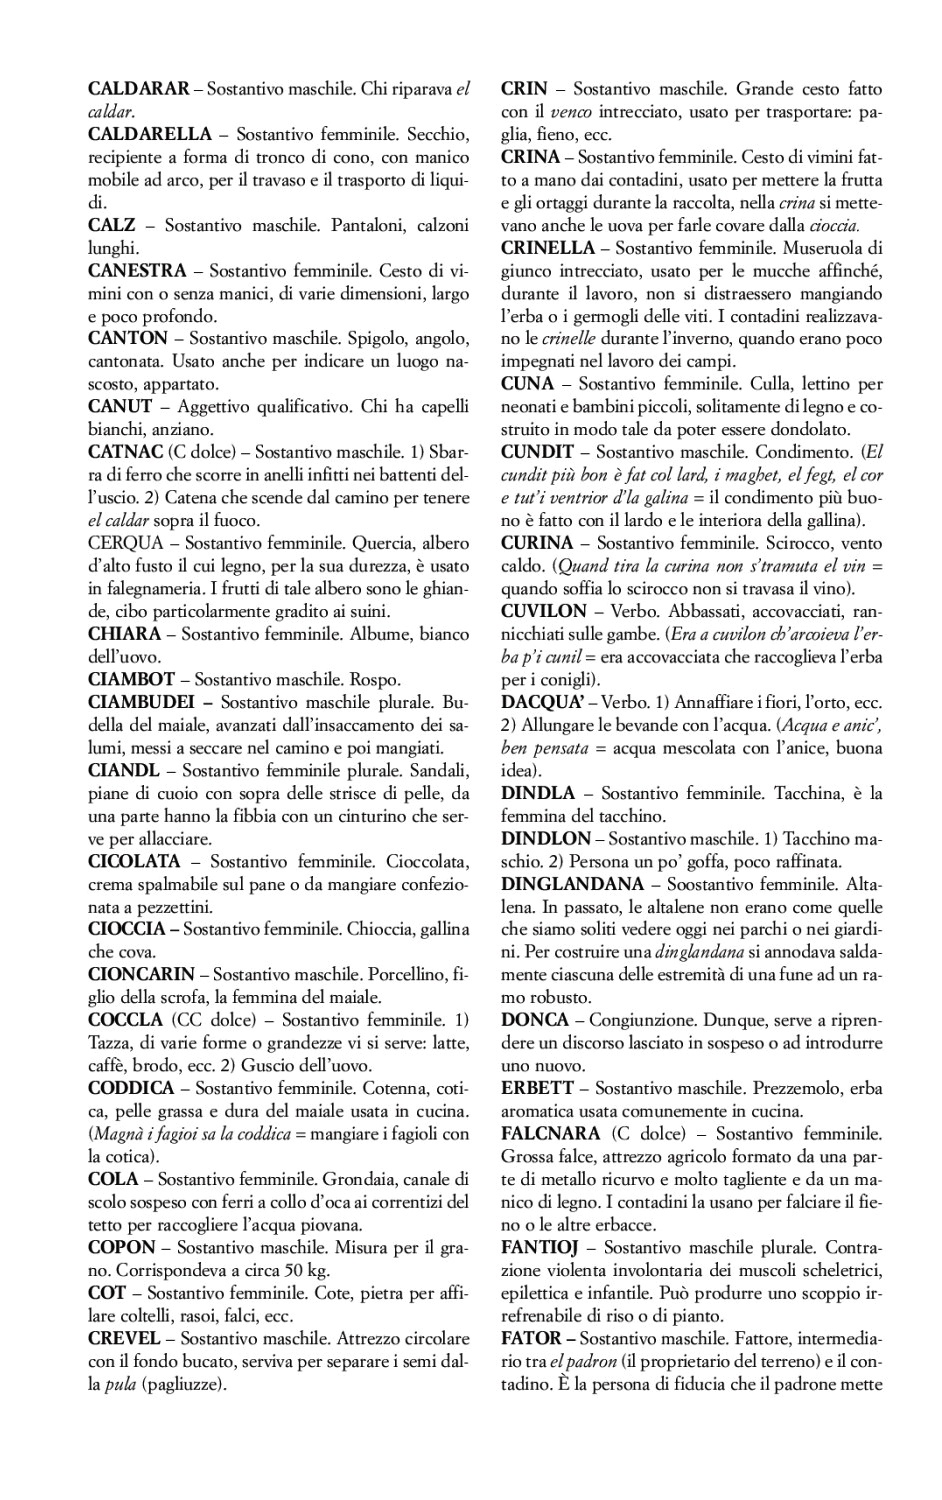 La torr i arduna tutti 2005 p.025